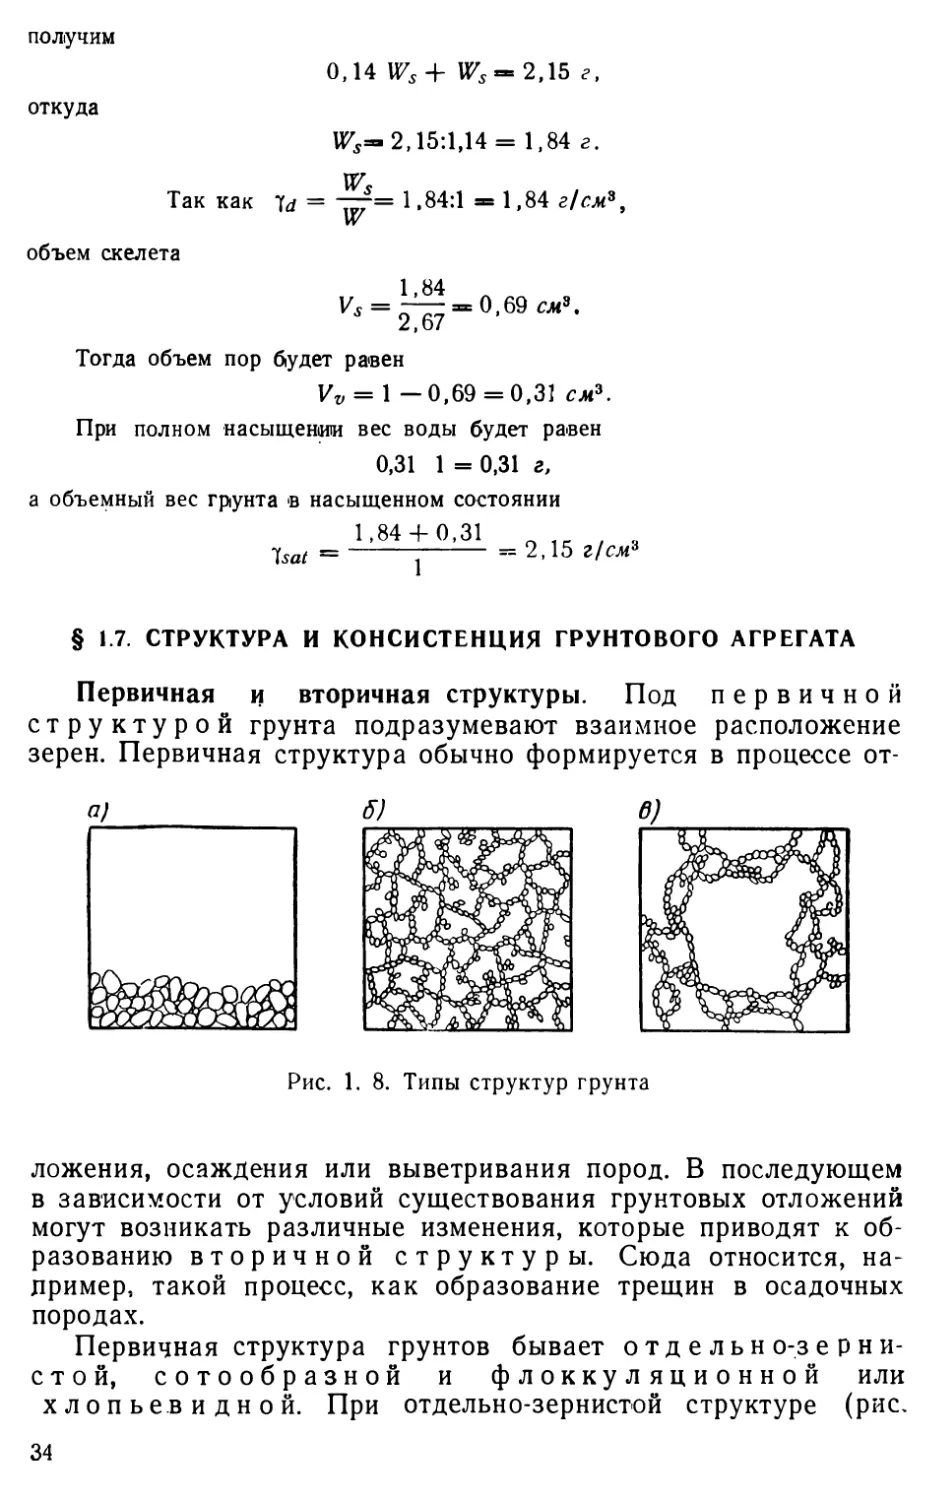 § 1.7. Структура и консистенция грунтового агрегата